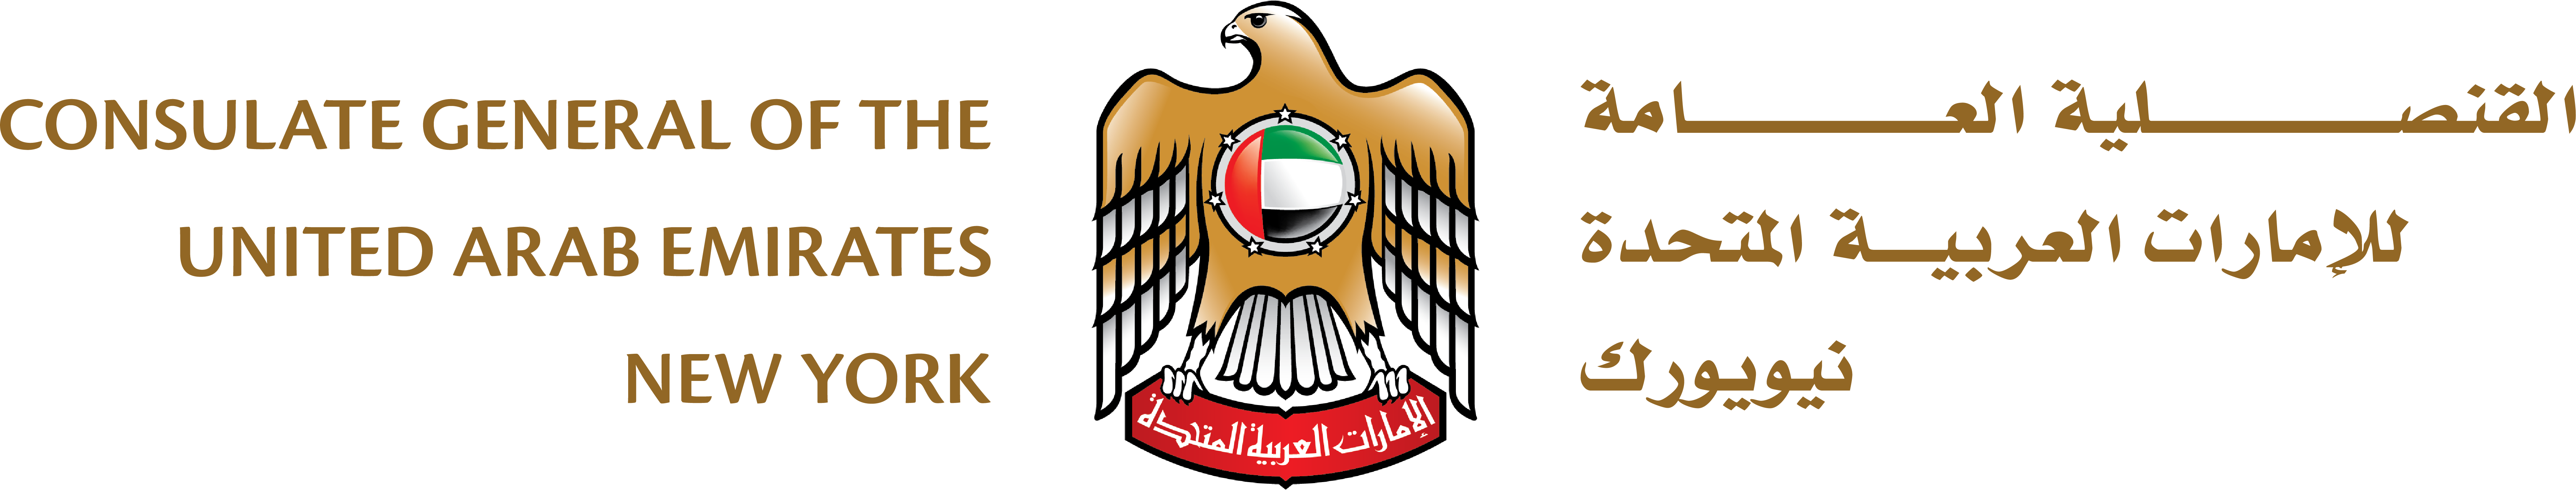 UAE Consulate